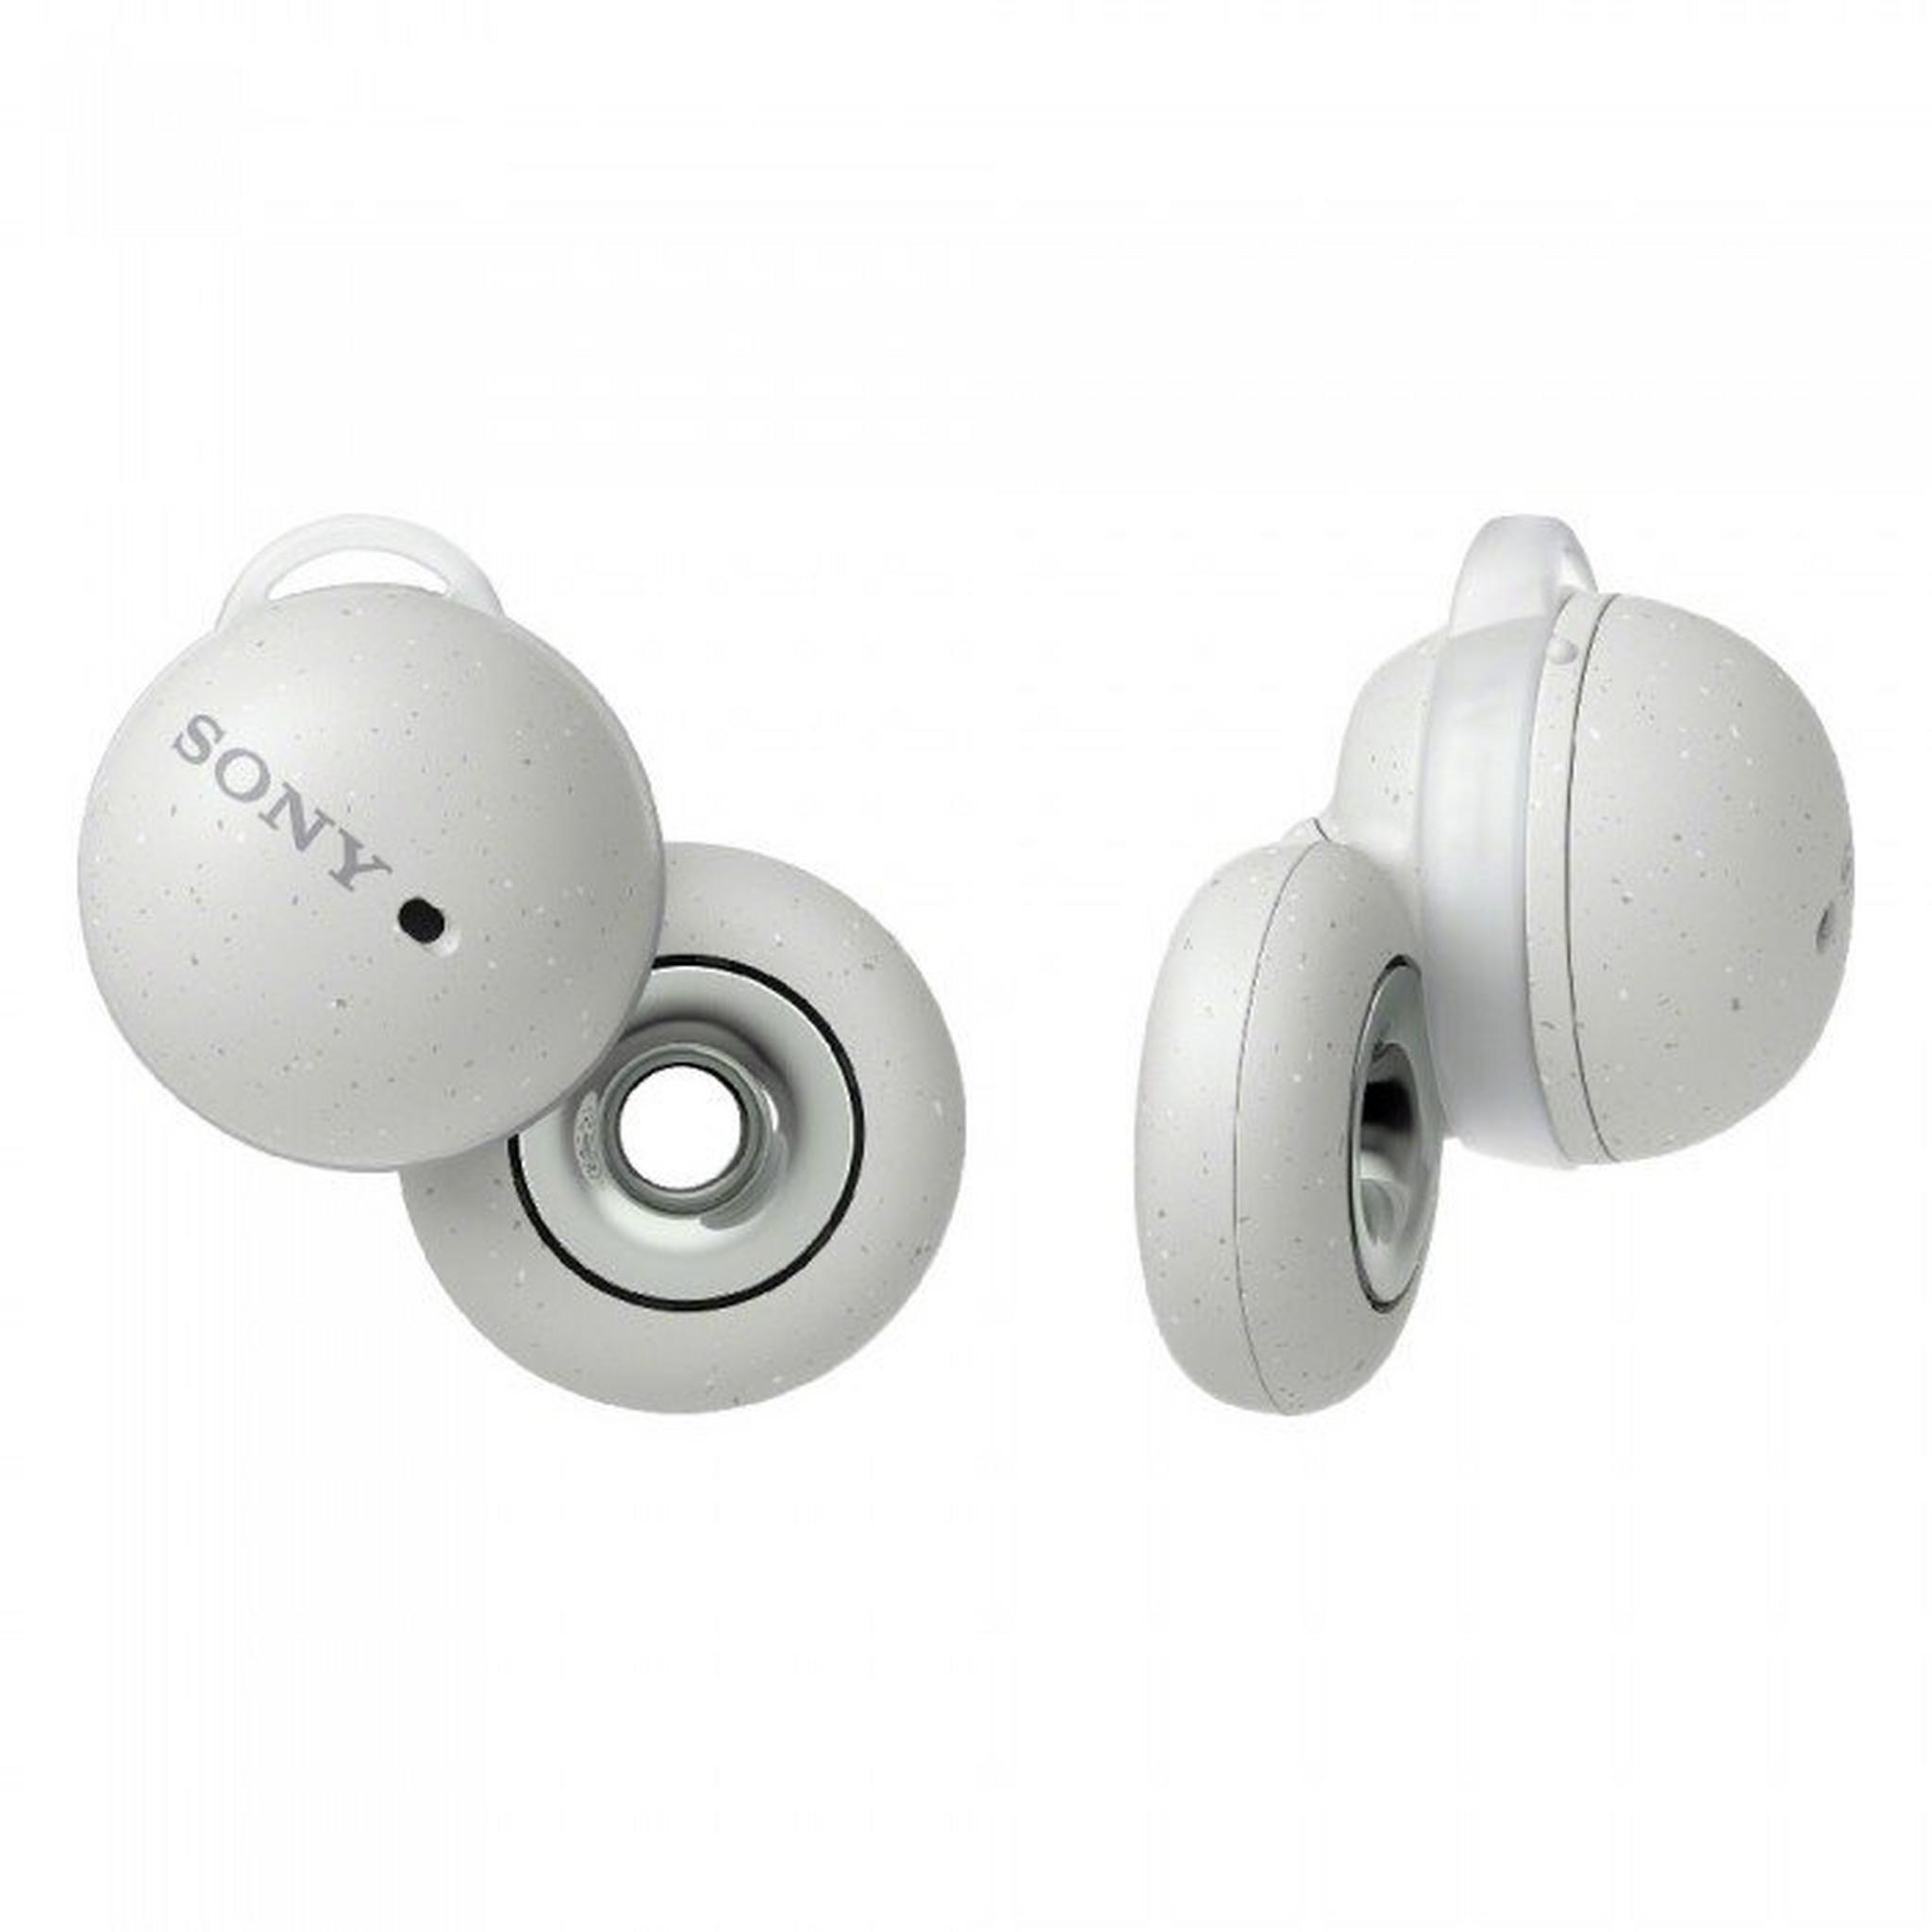 Sony LinkBuds True Wireless Earbuds - White